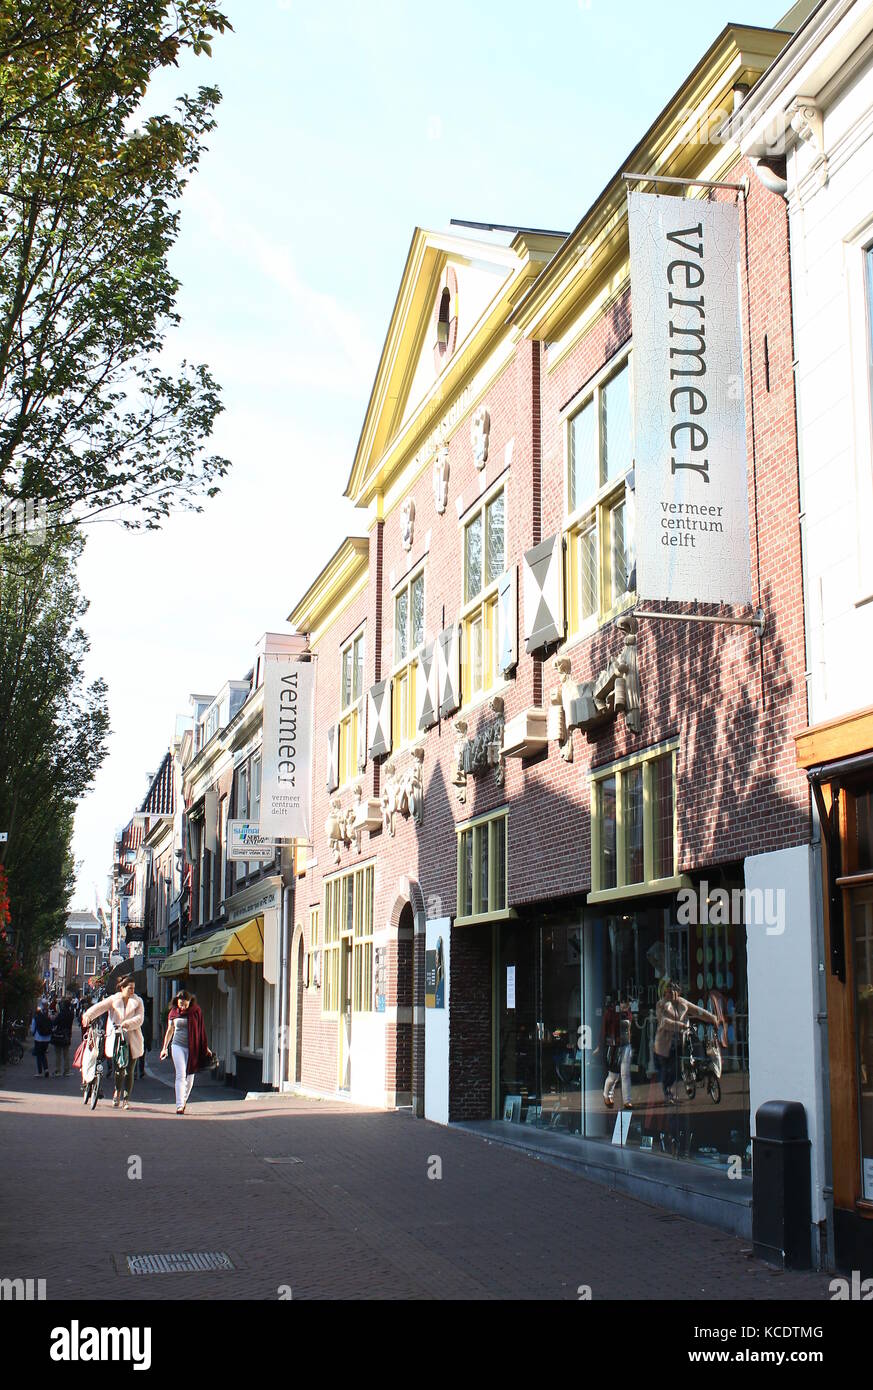 Vermeer Center am Voldersgracht, Delft, Niederlande. Museum und Informationszentrum der Maler Johannes Vermeer gewidmet Stockfoto